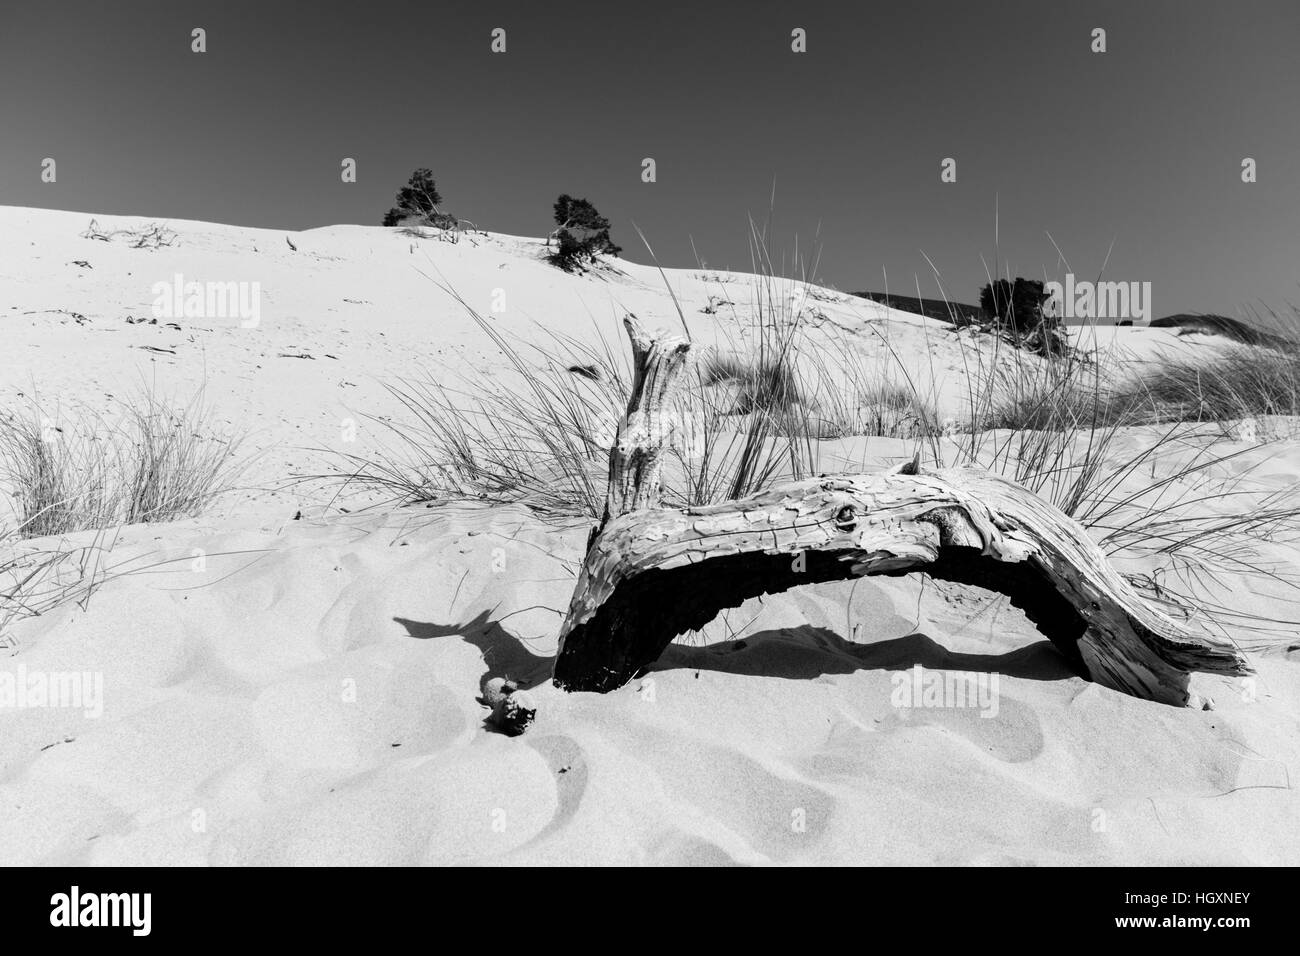 La plage de Le Dune, également connu sous le nom de White Sands, est une zone de dunes de sable blanc dans la ville de Teulada, dans la localité de Alghero, Sardaigne, Italie Banque D'Images